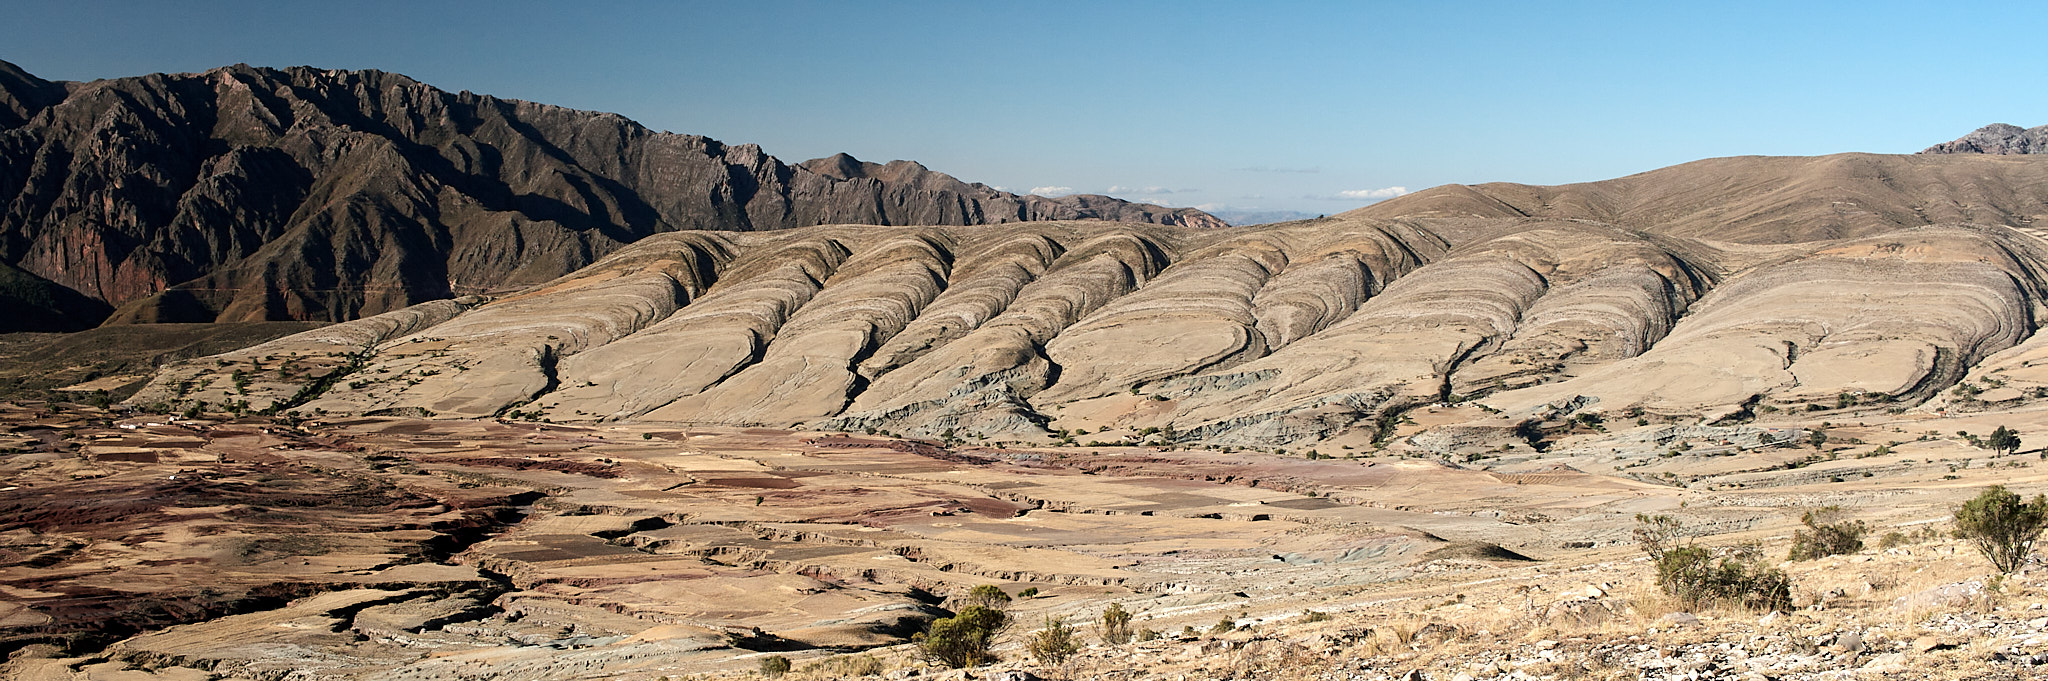 Scallops of the Upper El Molino Formation at Maragua, Bolivia. 2016